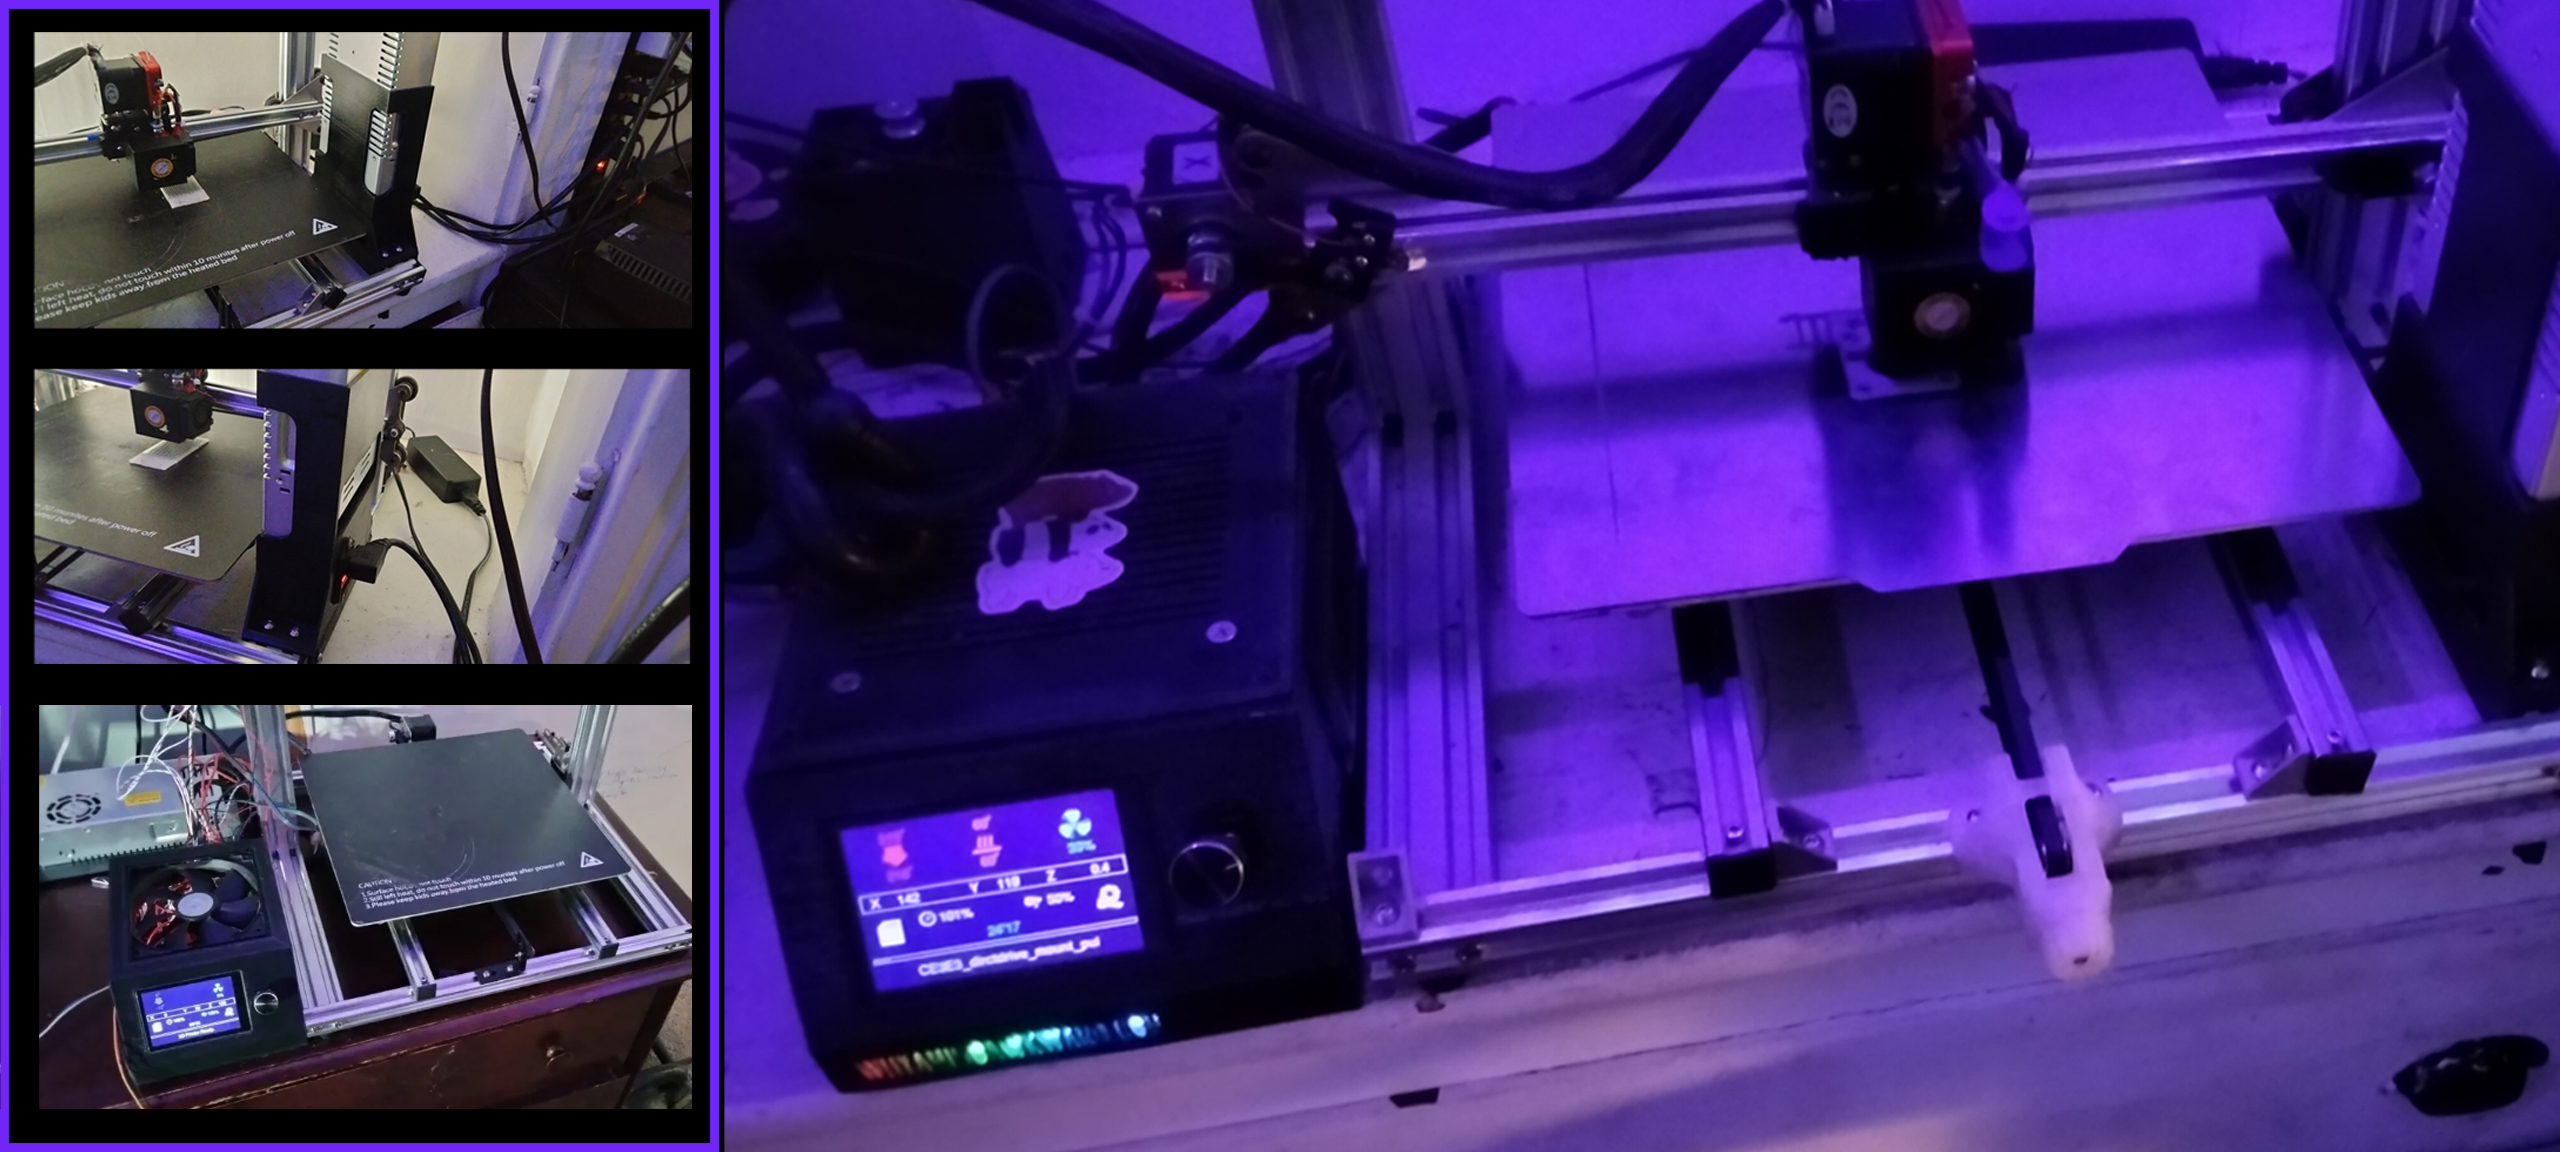 Refurbishing a DY-H9 3D Printer on a Budget